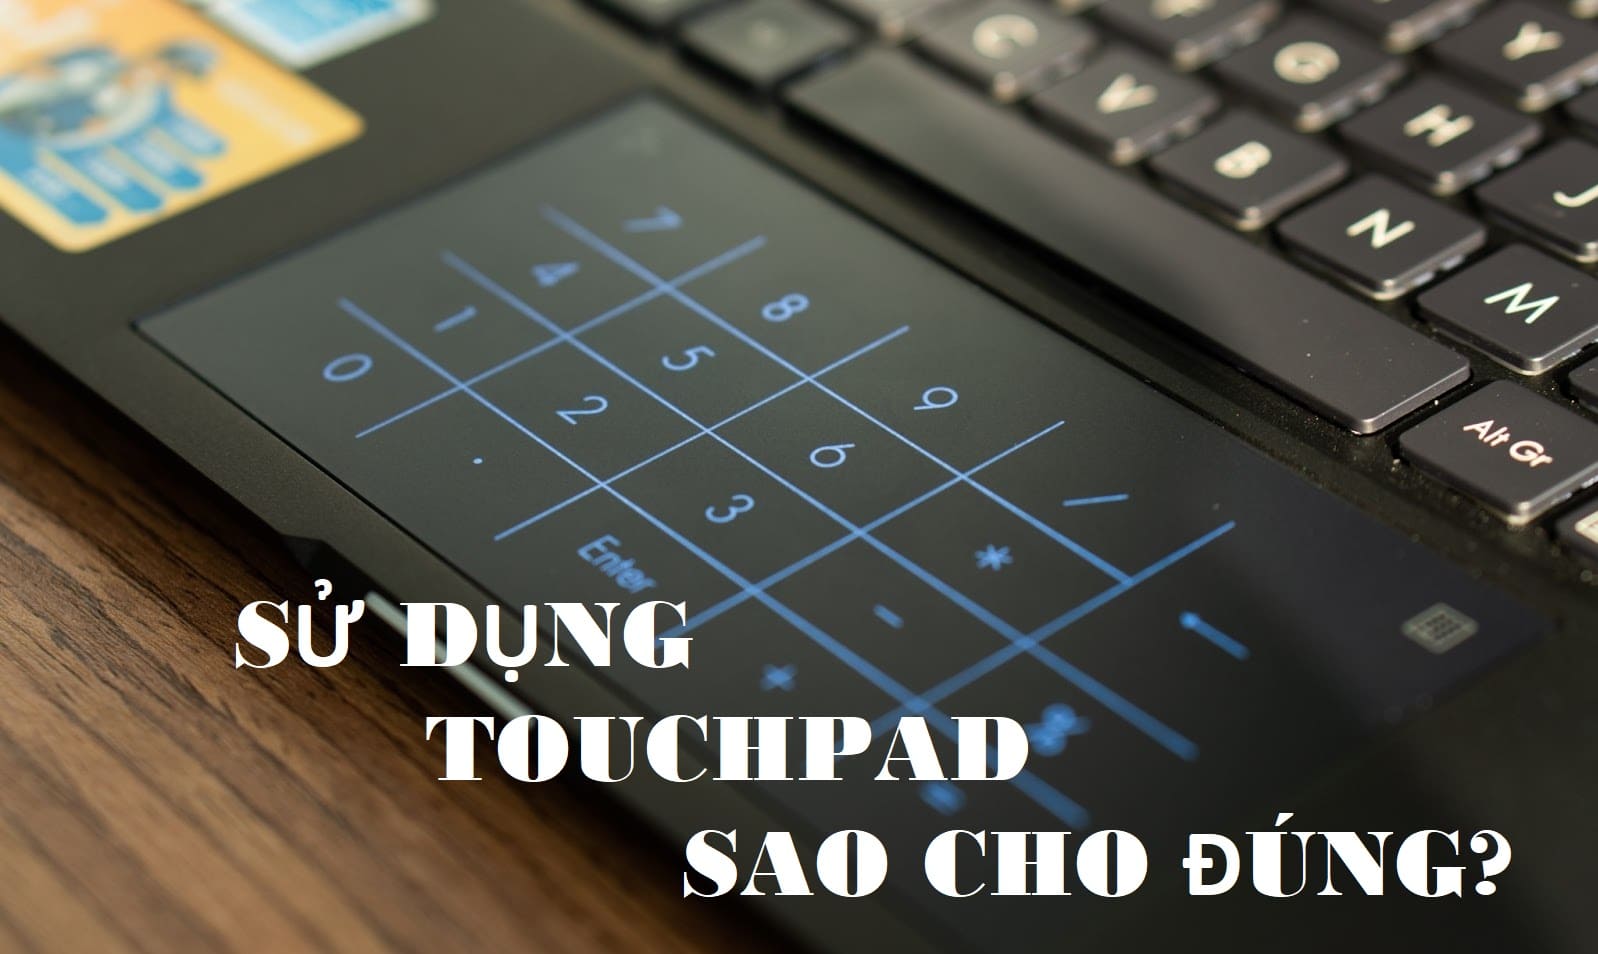 [Thủ thuật] Những tính năng siêu hay khi sử dụng touchpad trên laptop windows